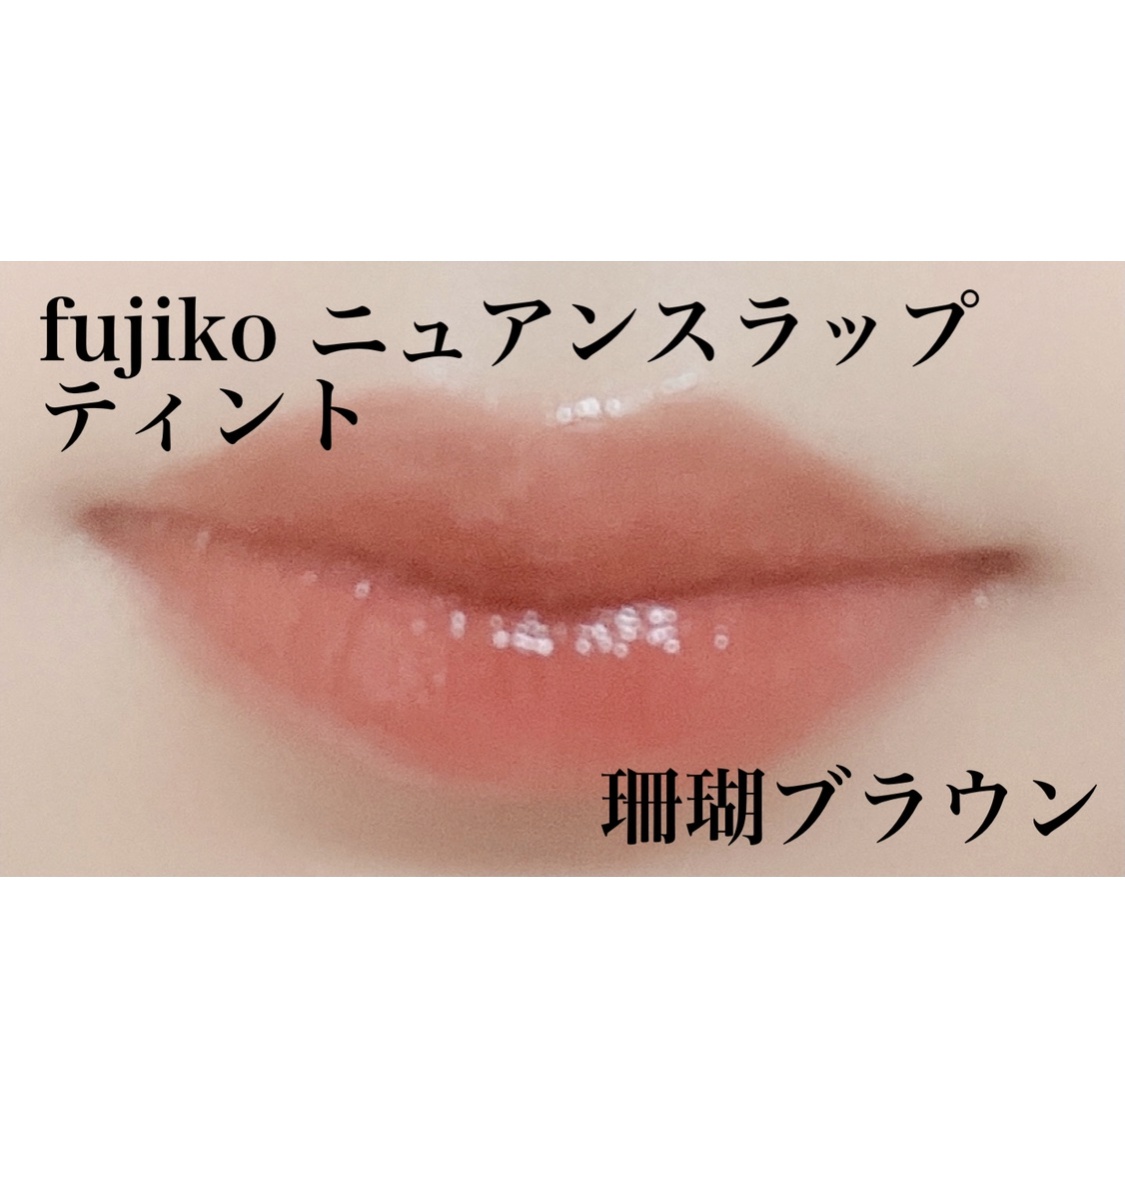 Fujiko(フジコ) ニュアンスラップティントを使ったなゆさんのクチコミ画像1